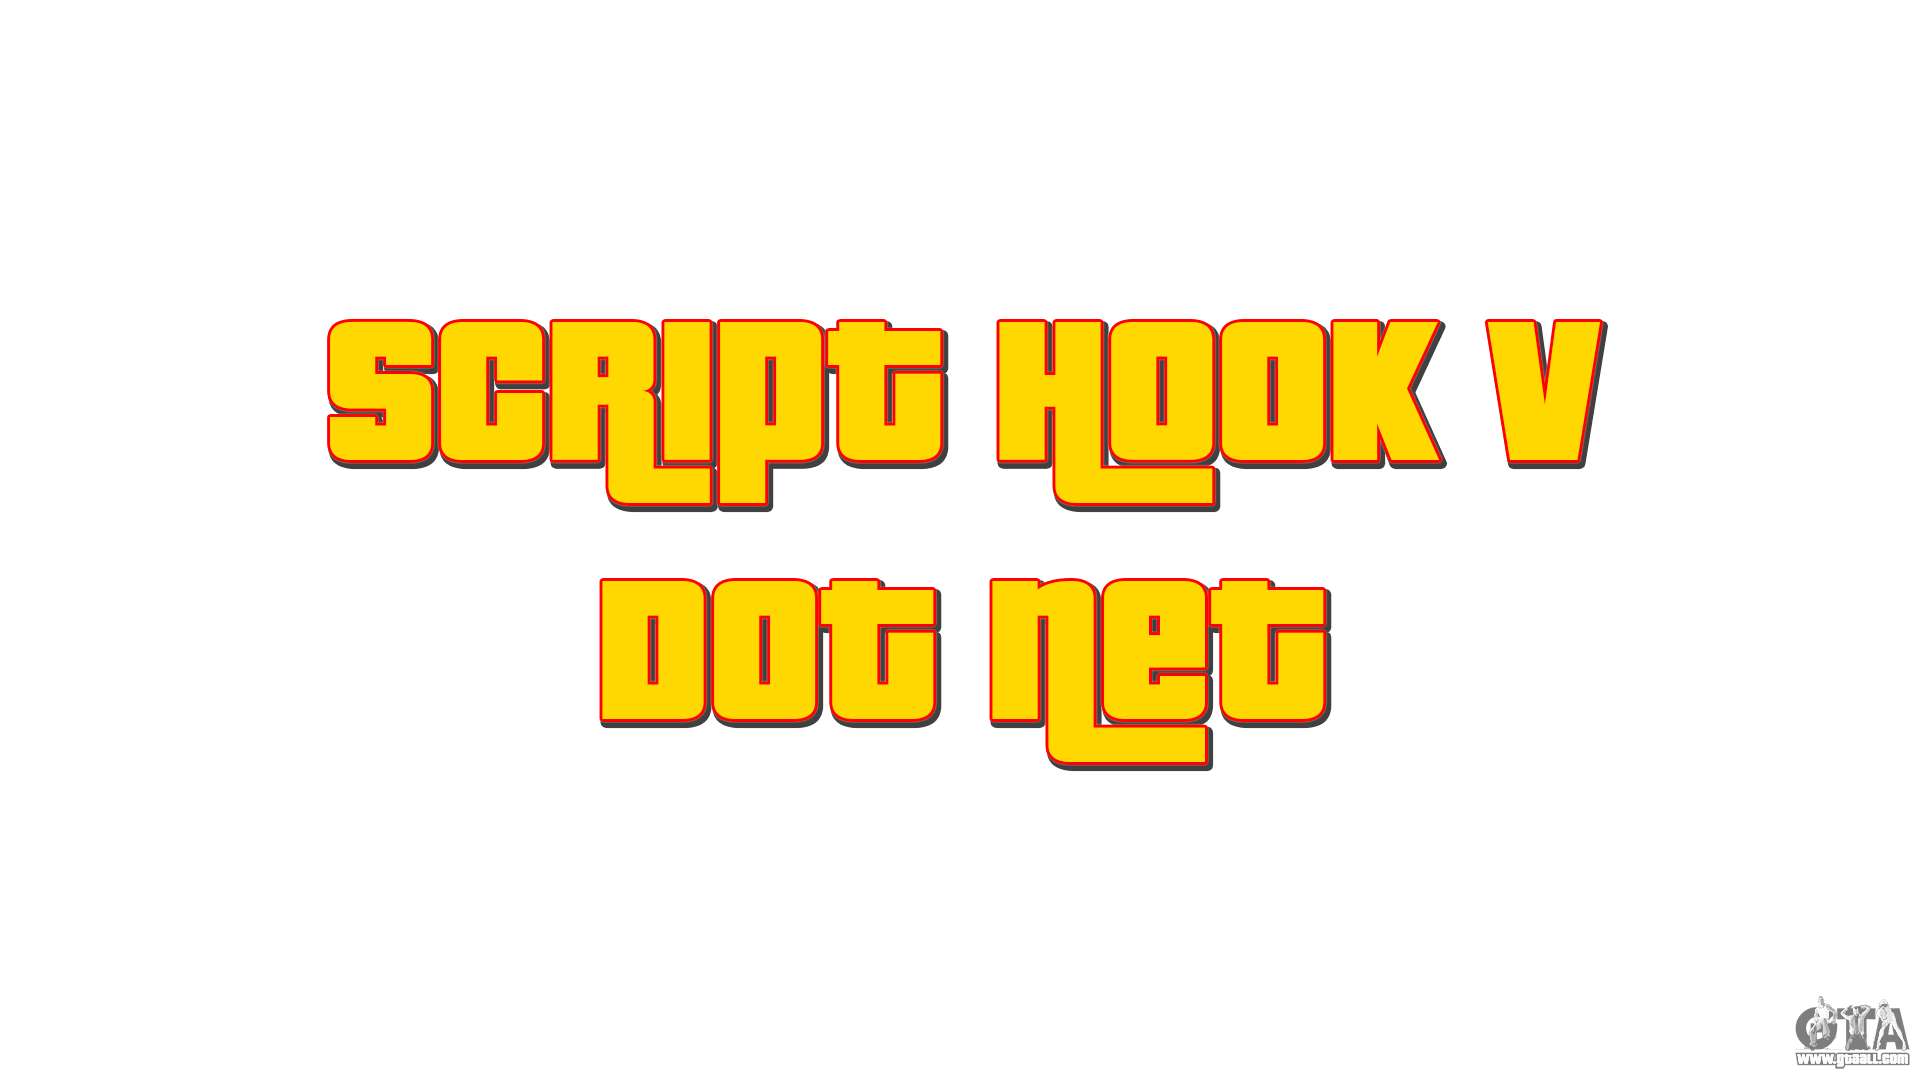 Script Hook V Net